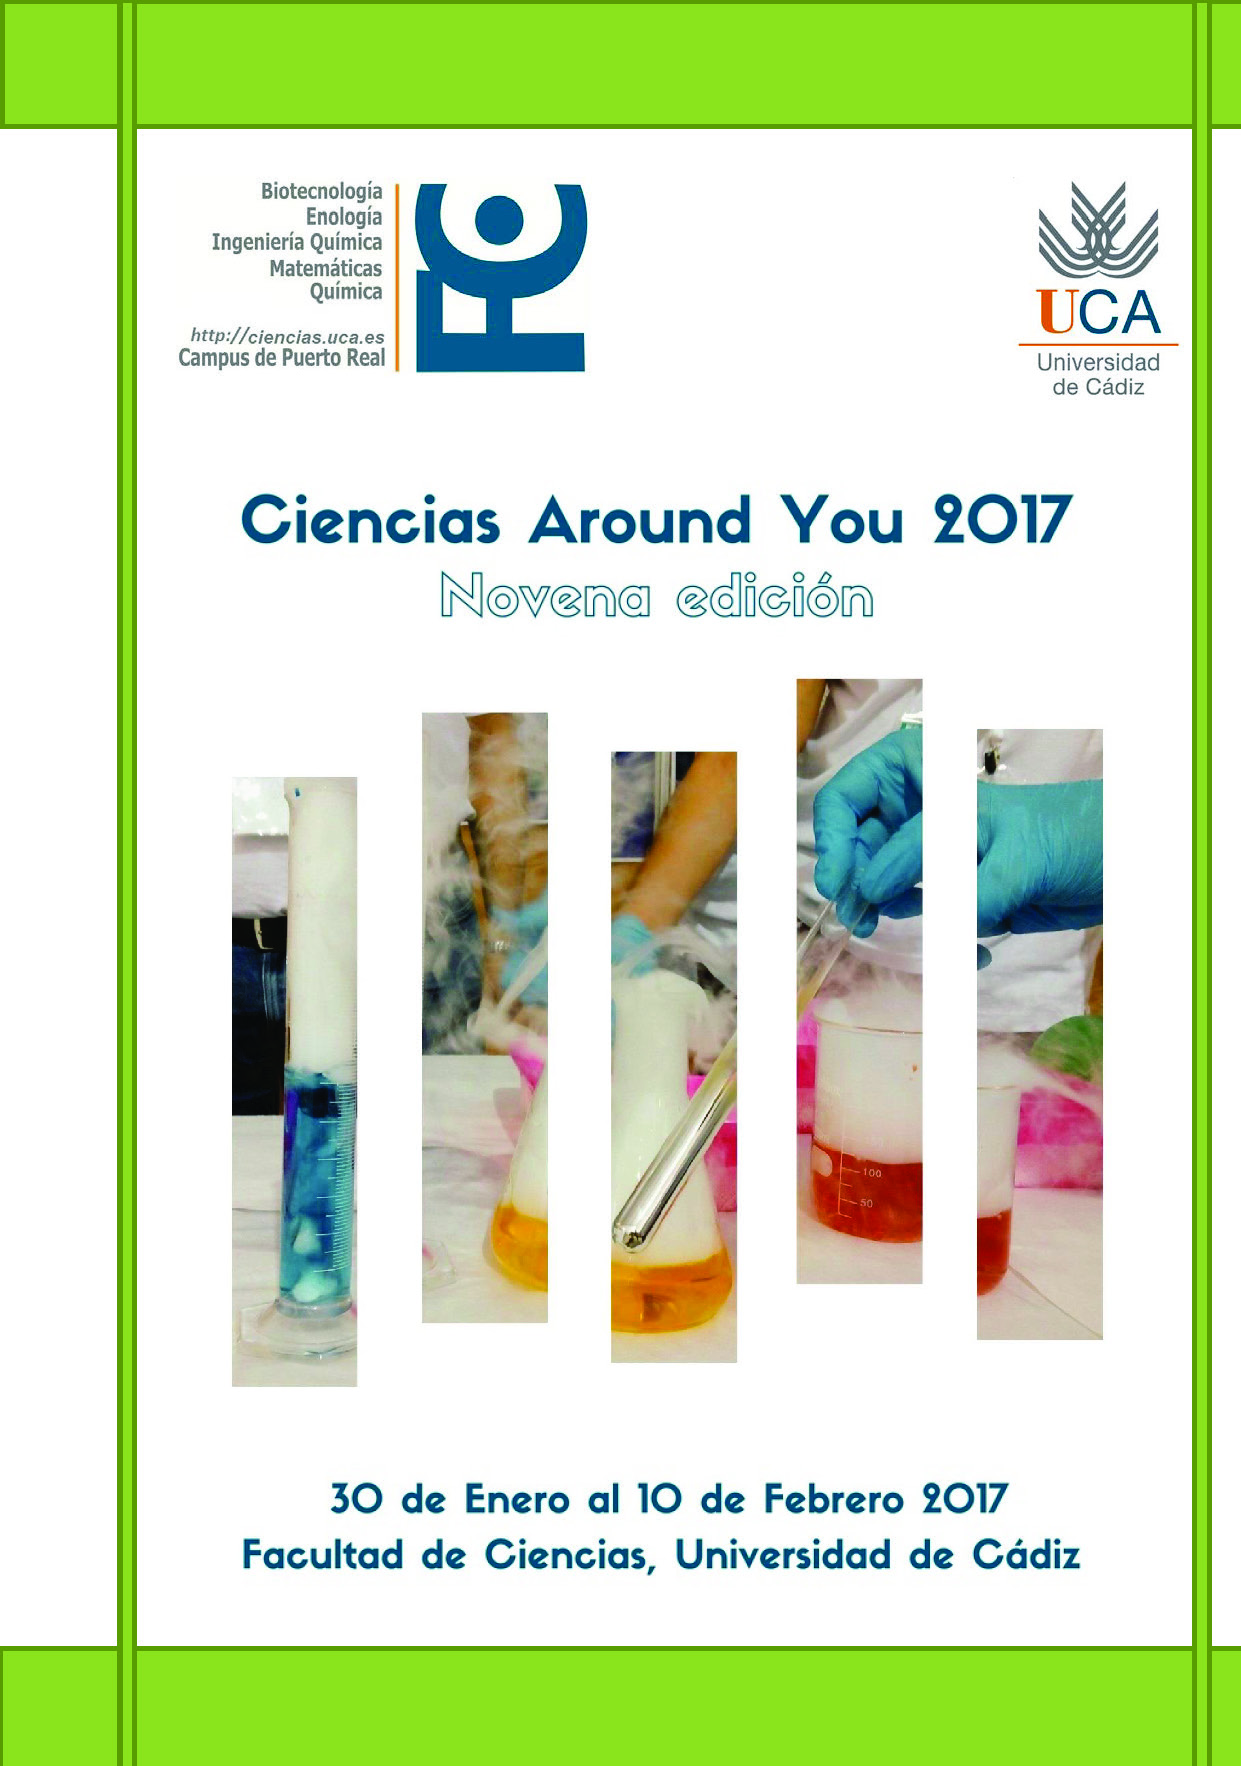 Ciencias Around You 2017 – 30 de enero